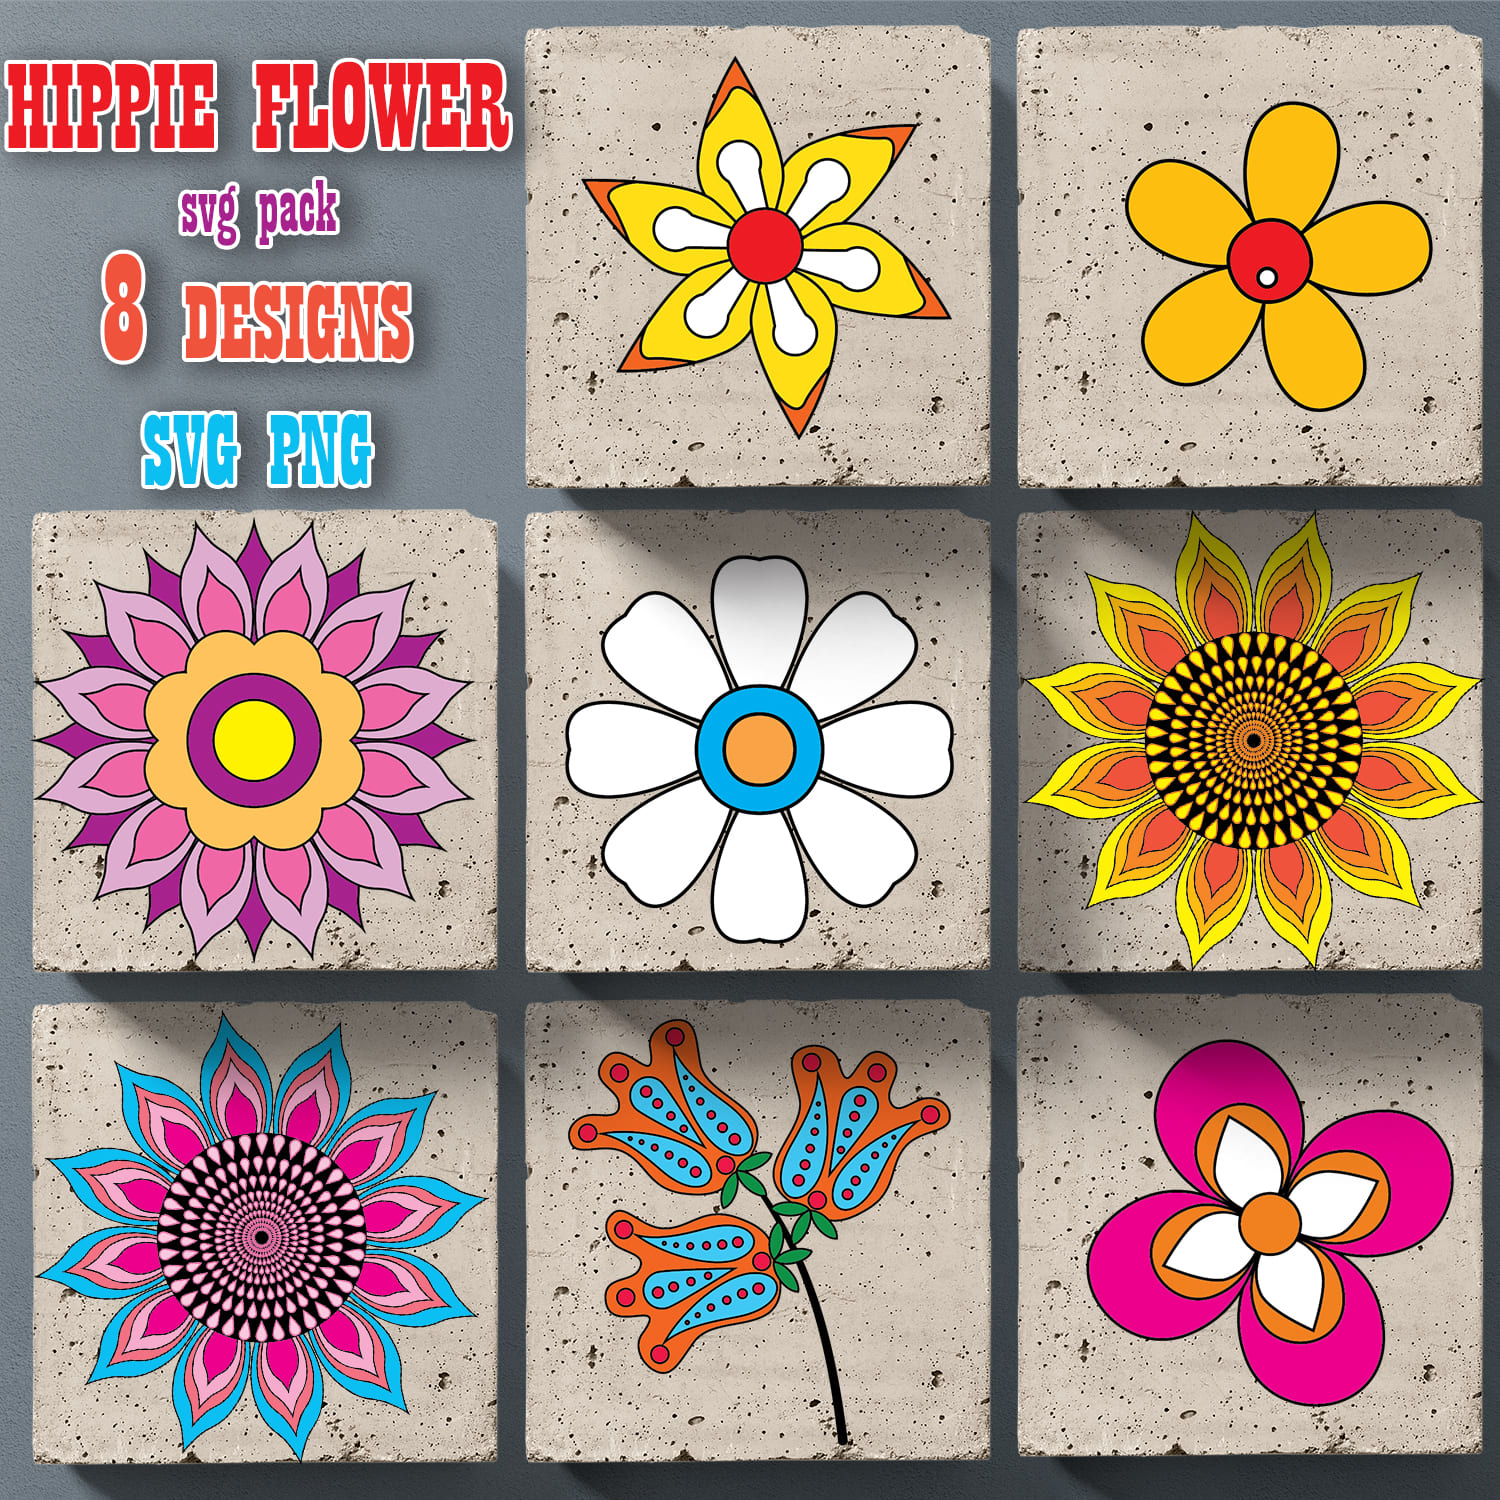 Hippie Flower SVG T-shirt Designs Bundle - main image preview.